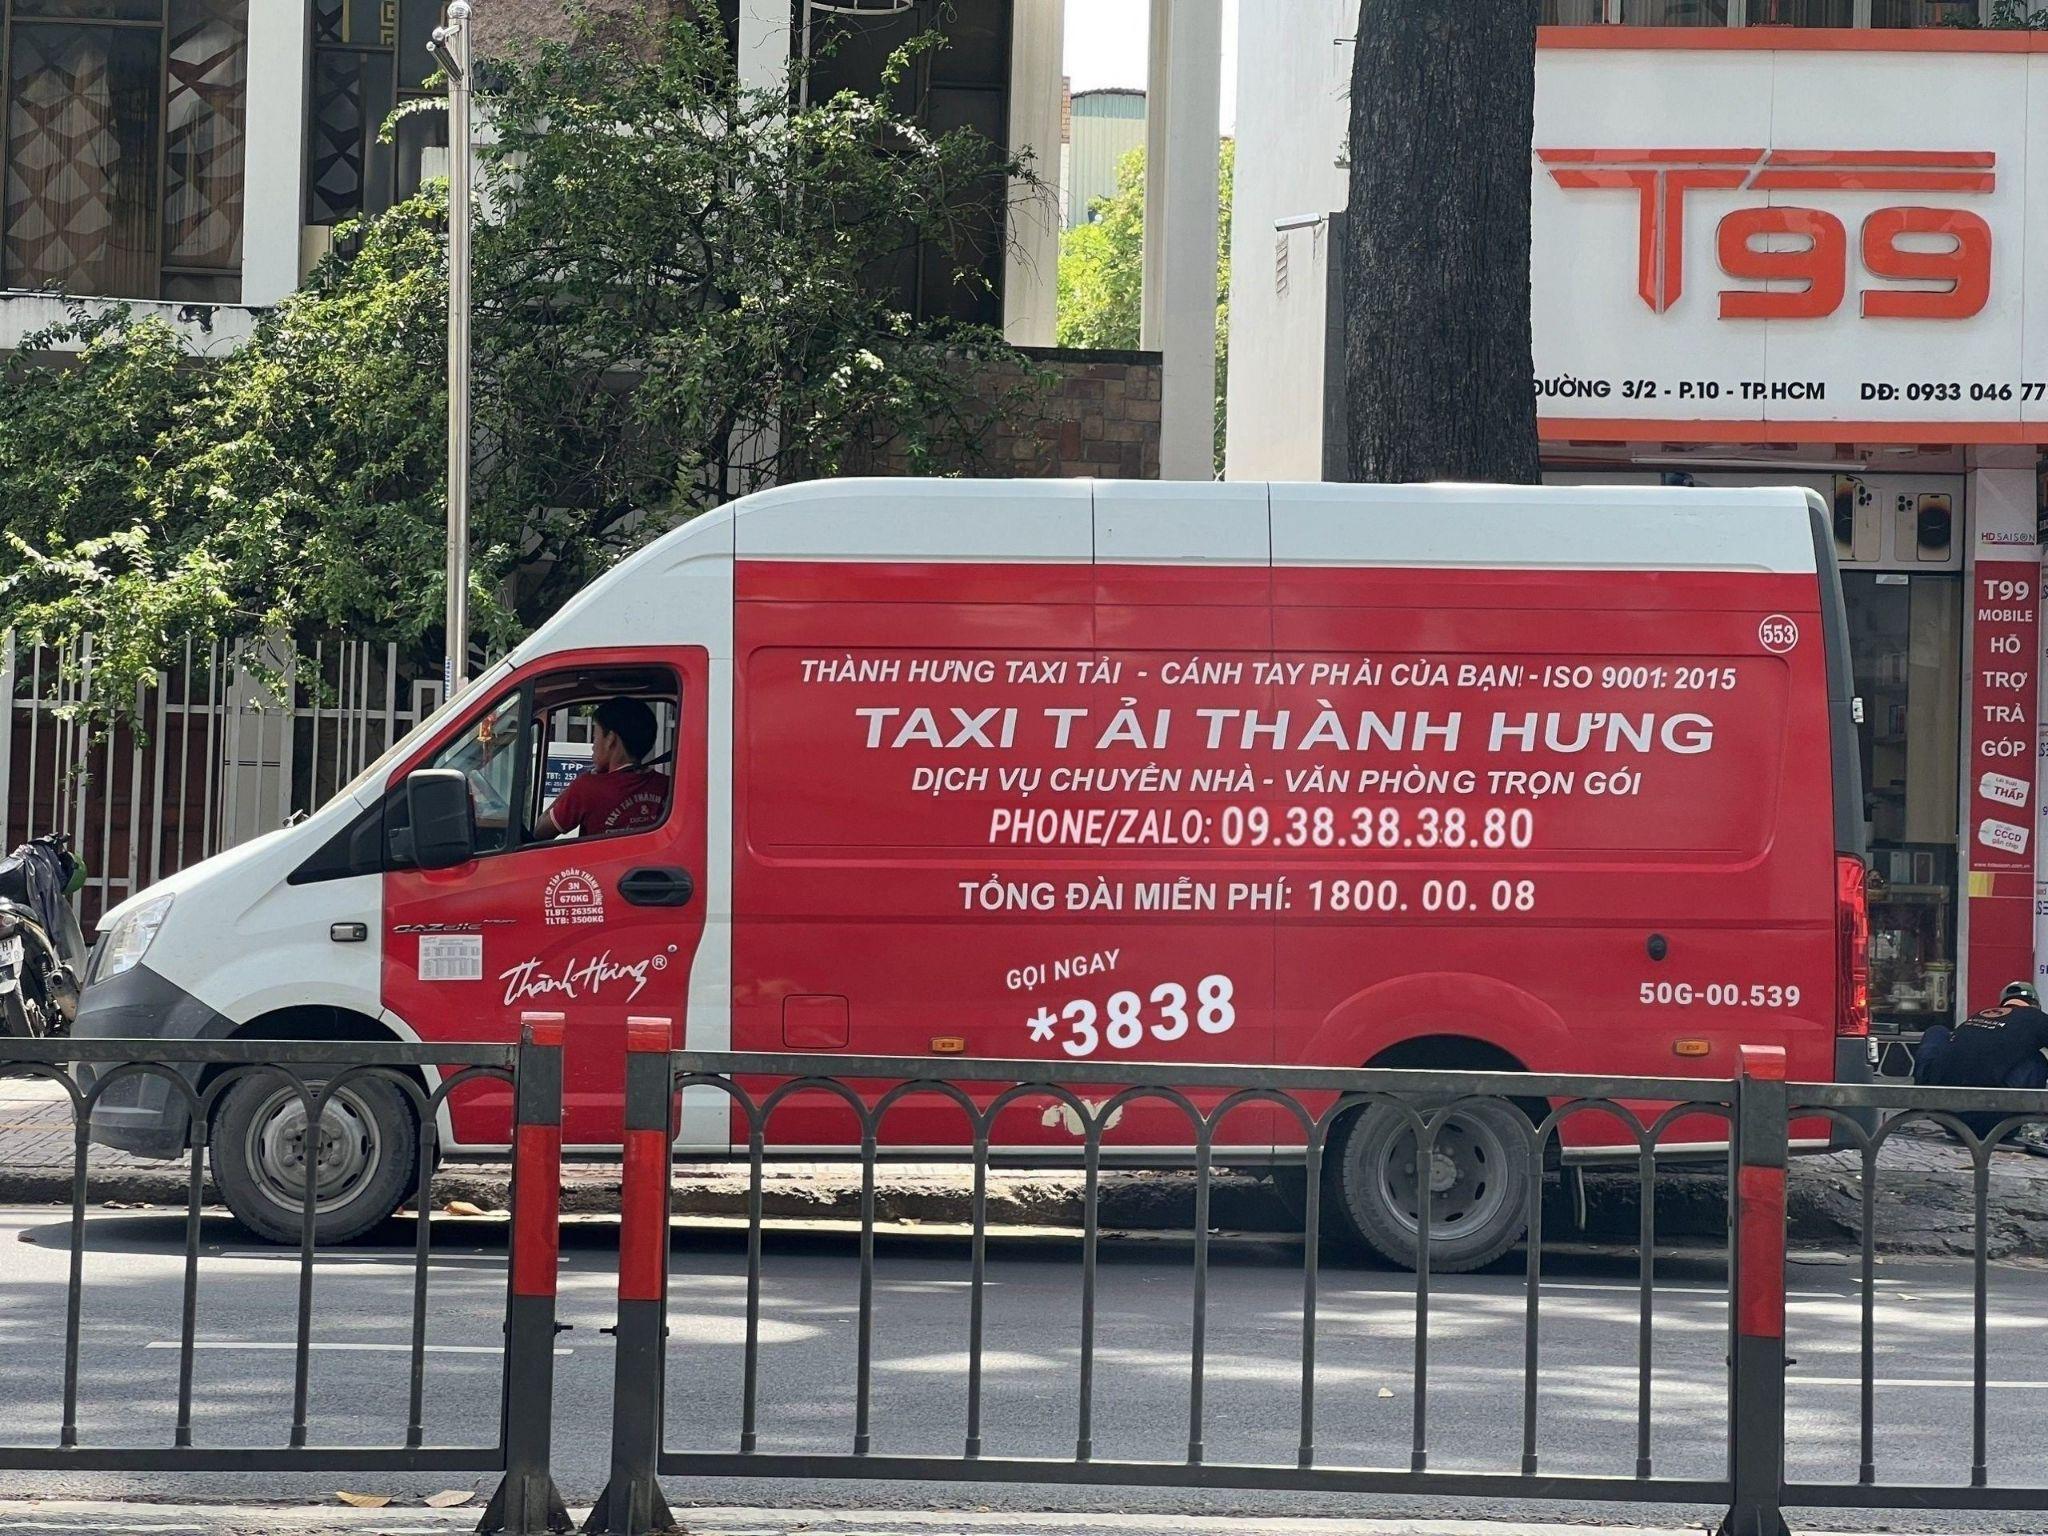 Số điện thoại Taxi Tải Thành Hưng duy nhất *3838 - Chuyển nhà, hoàn trả mặt bằng văn phòng chuyên nghiệp an toàn tiết kiệm